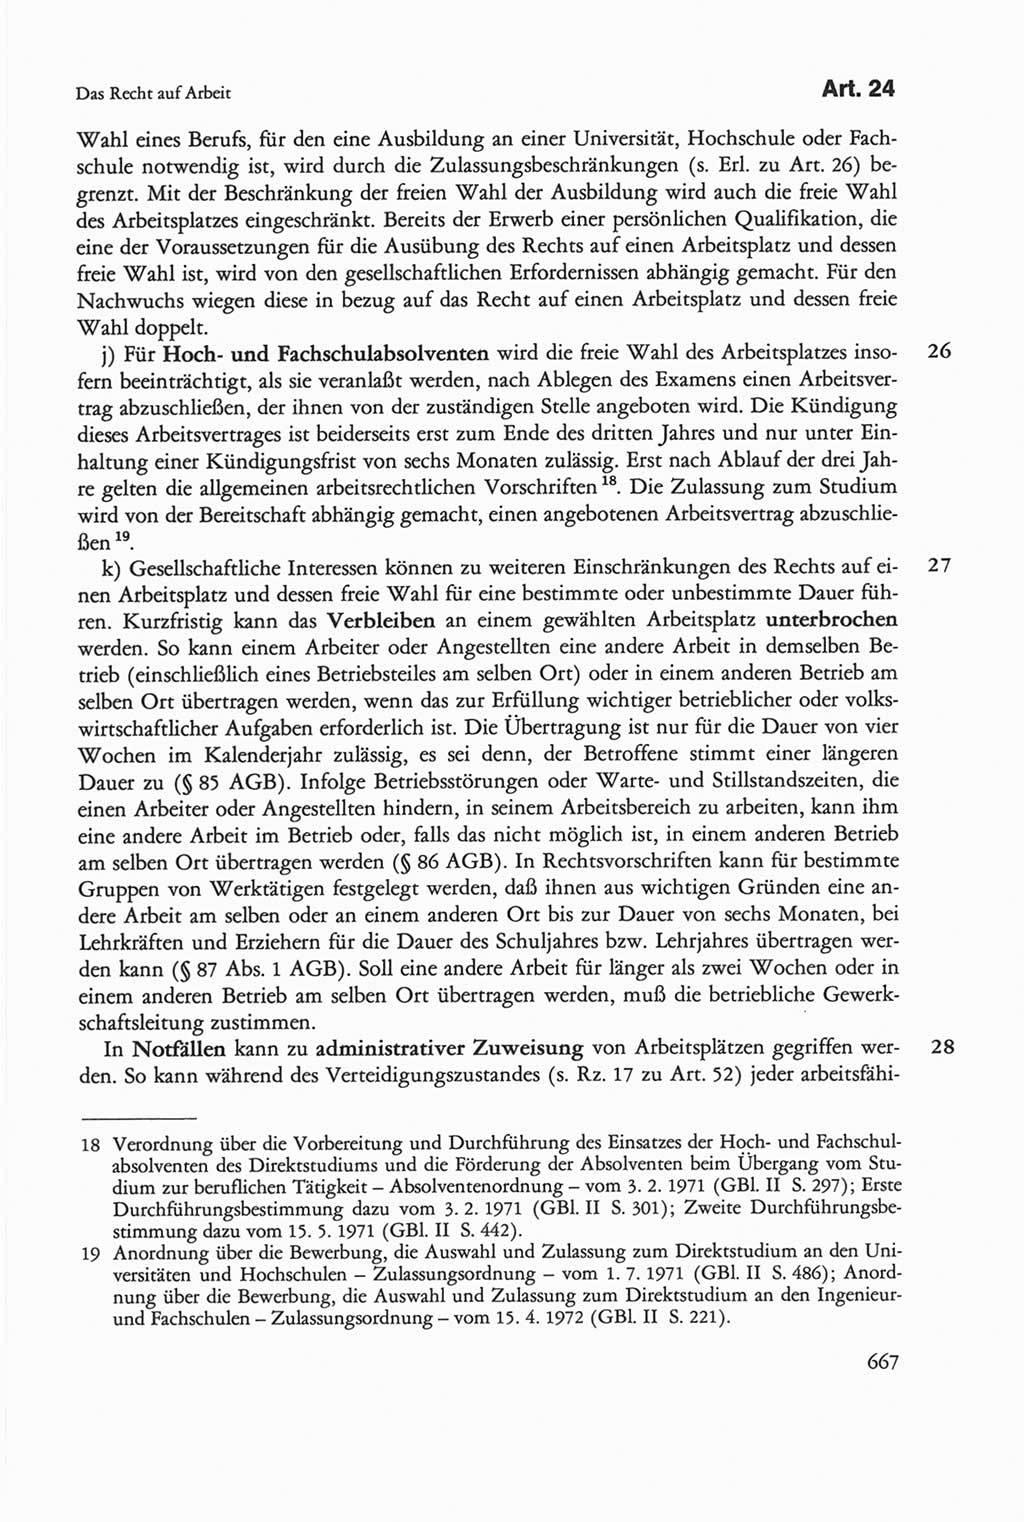 Die sozialistische Verfassung der Deutschen Demokratischen Republik (DDR), Kommentar mit einem Nachtrag 1997, Seite 667 (Soz. Verf. DDR Komm. Nachtr. 1997, S. 667)